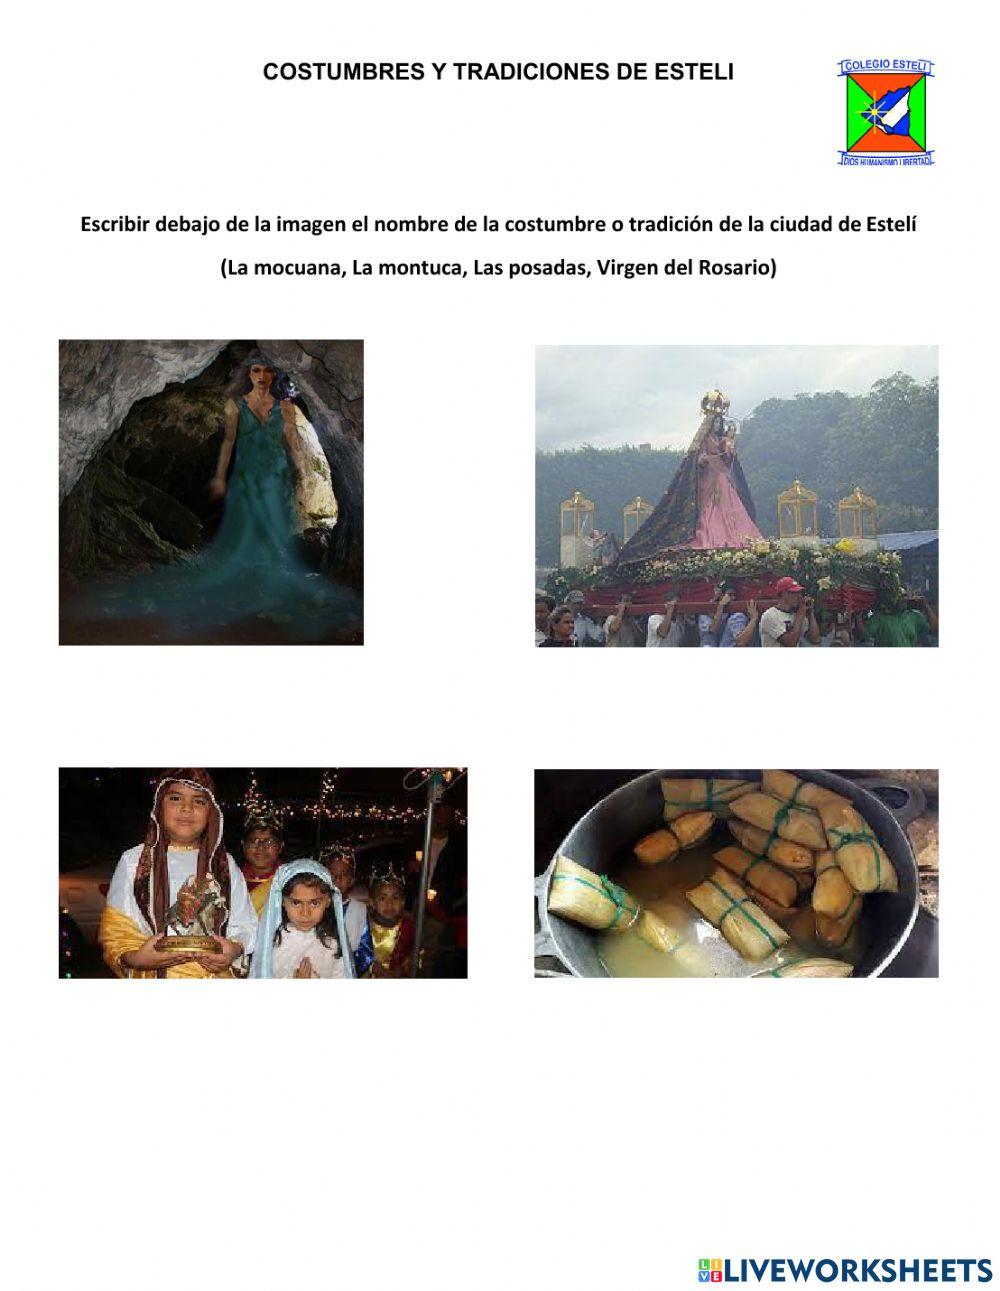 Costumbres y tradiciones de Estelí